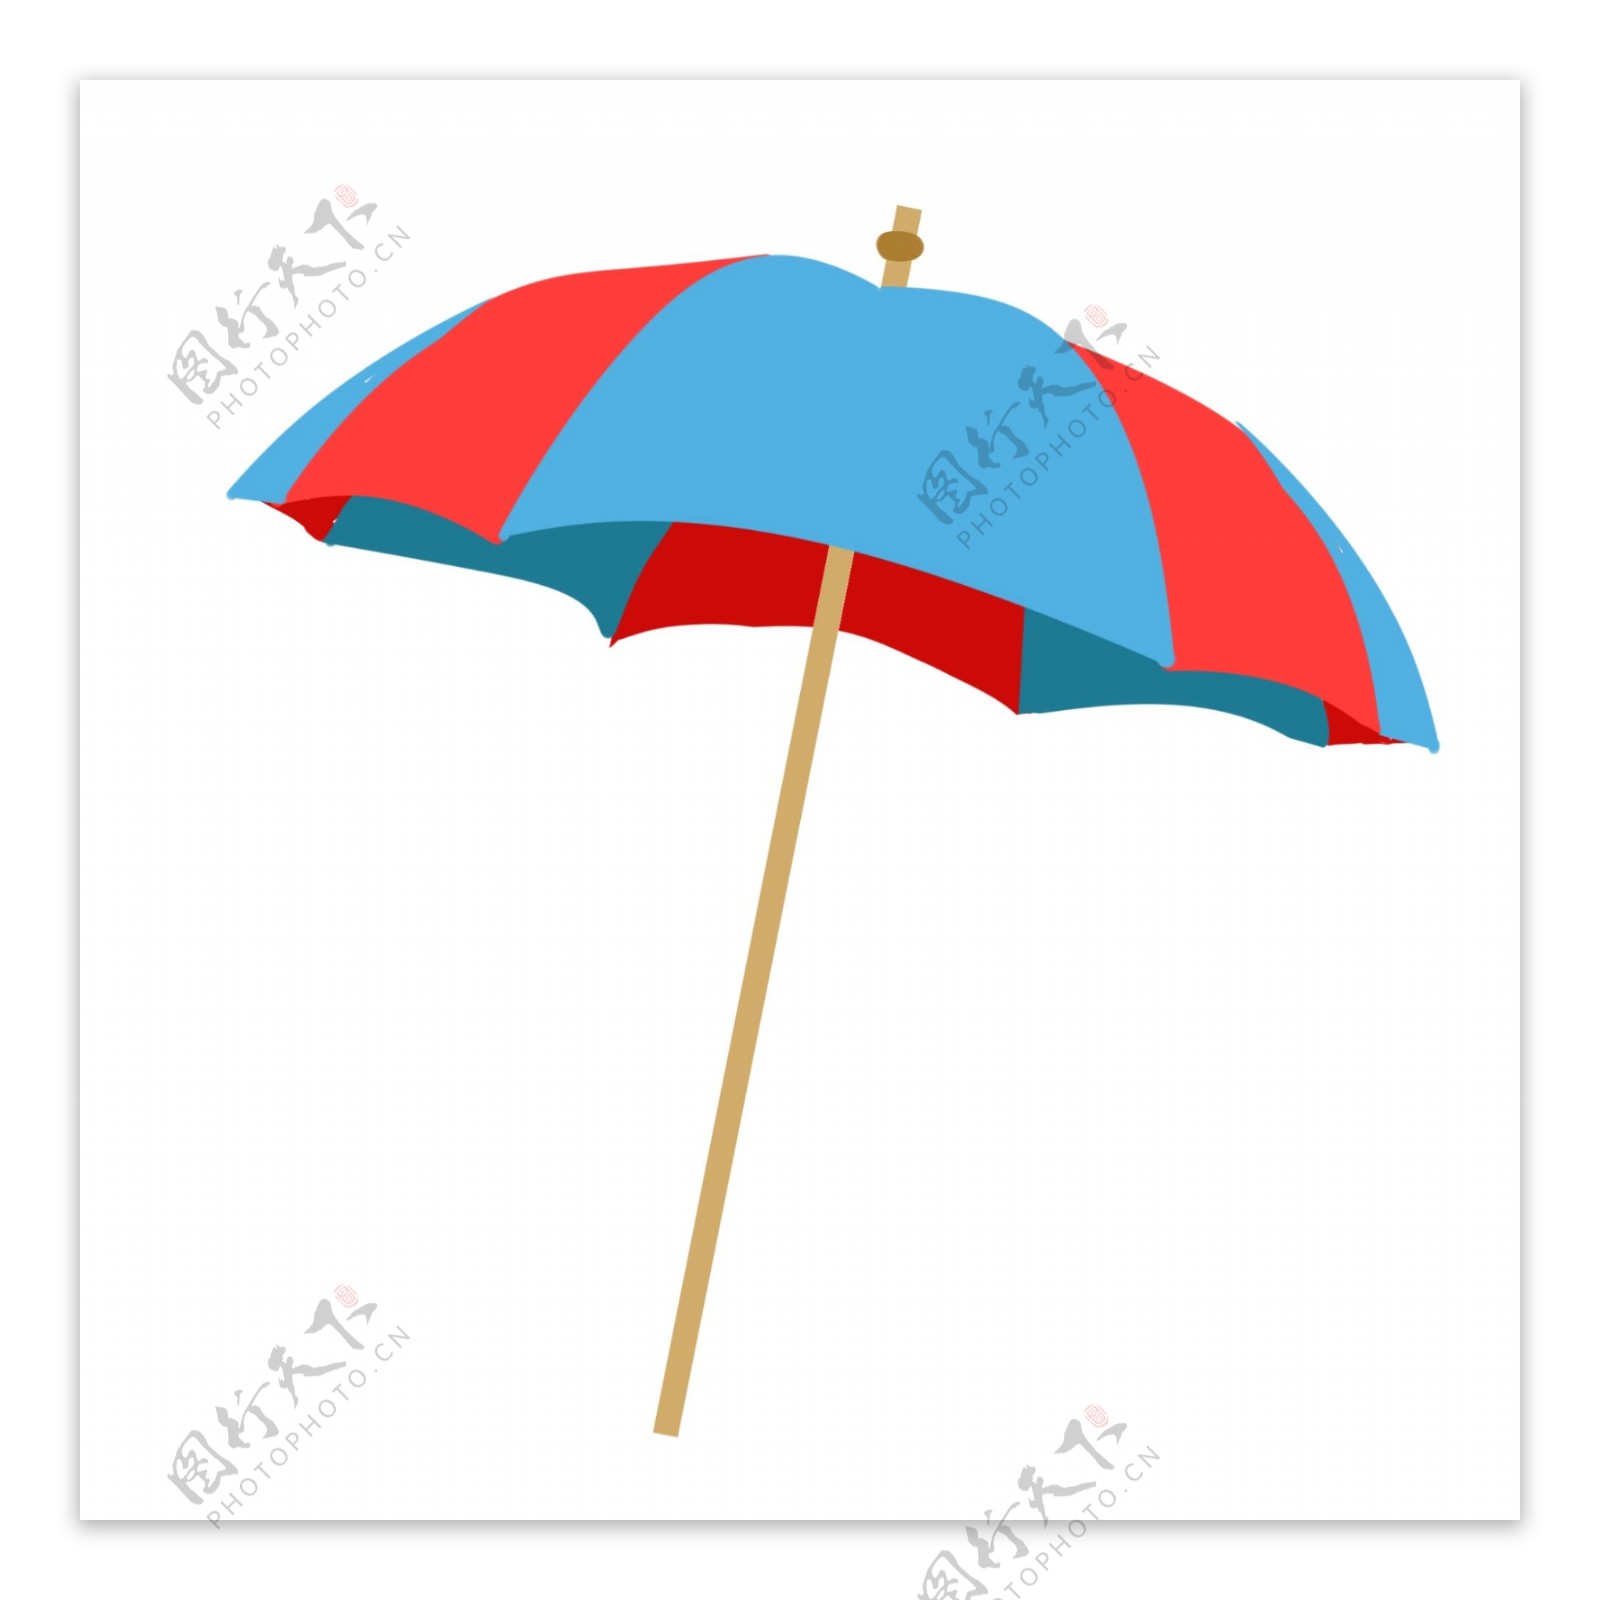 红蓝色卡通遮阳伞